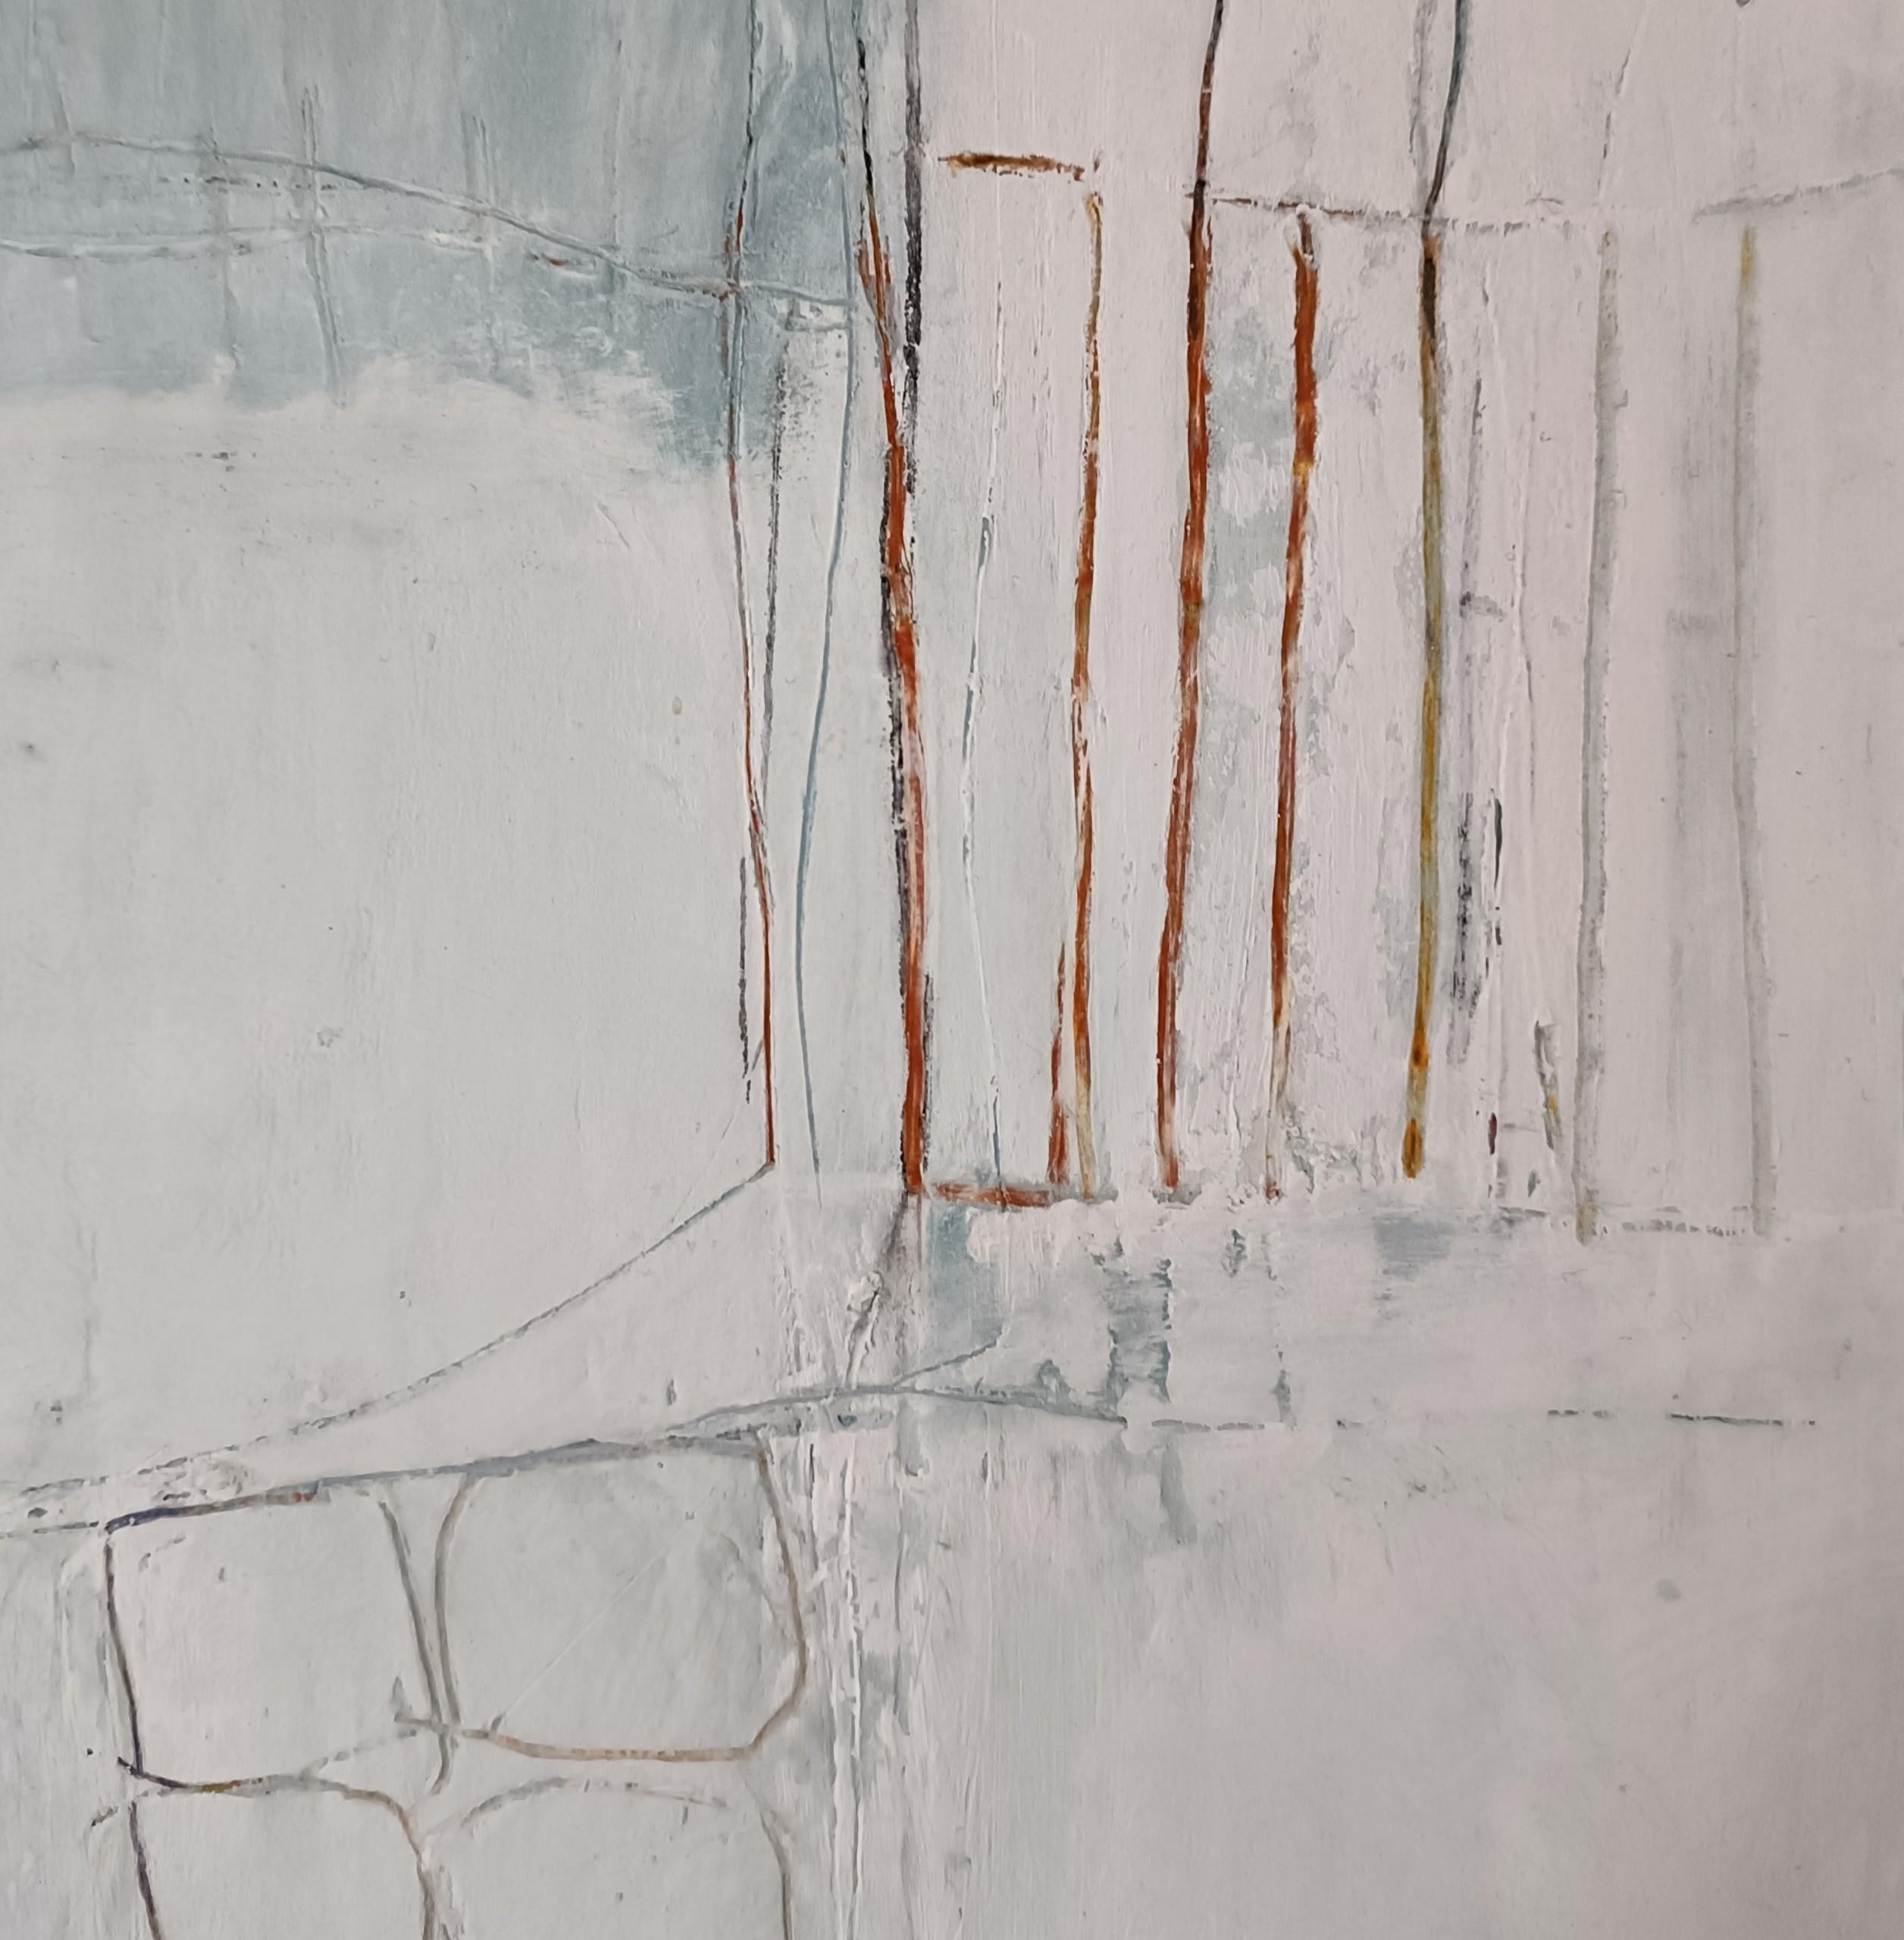 Meet Me by the Wall est une peinture originale de Mary Scott. Il s'agit d'une peinture abstraite dans une palette minimale de teintes froides turquoise, blanches et grises, inspirée par le paysage marin du port de St Ives. Réalisée avec de la